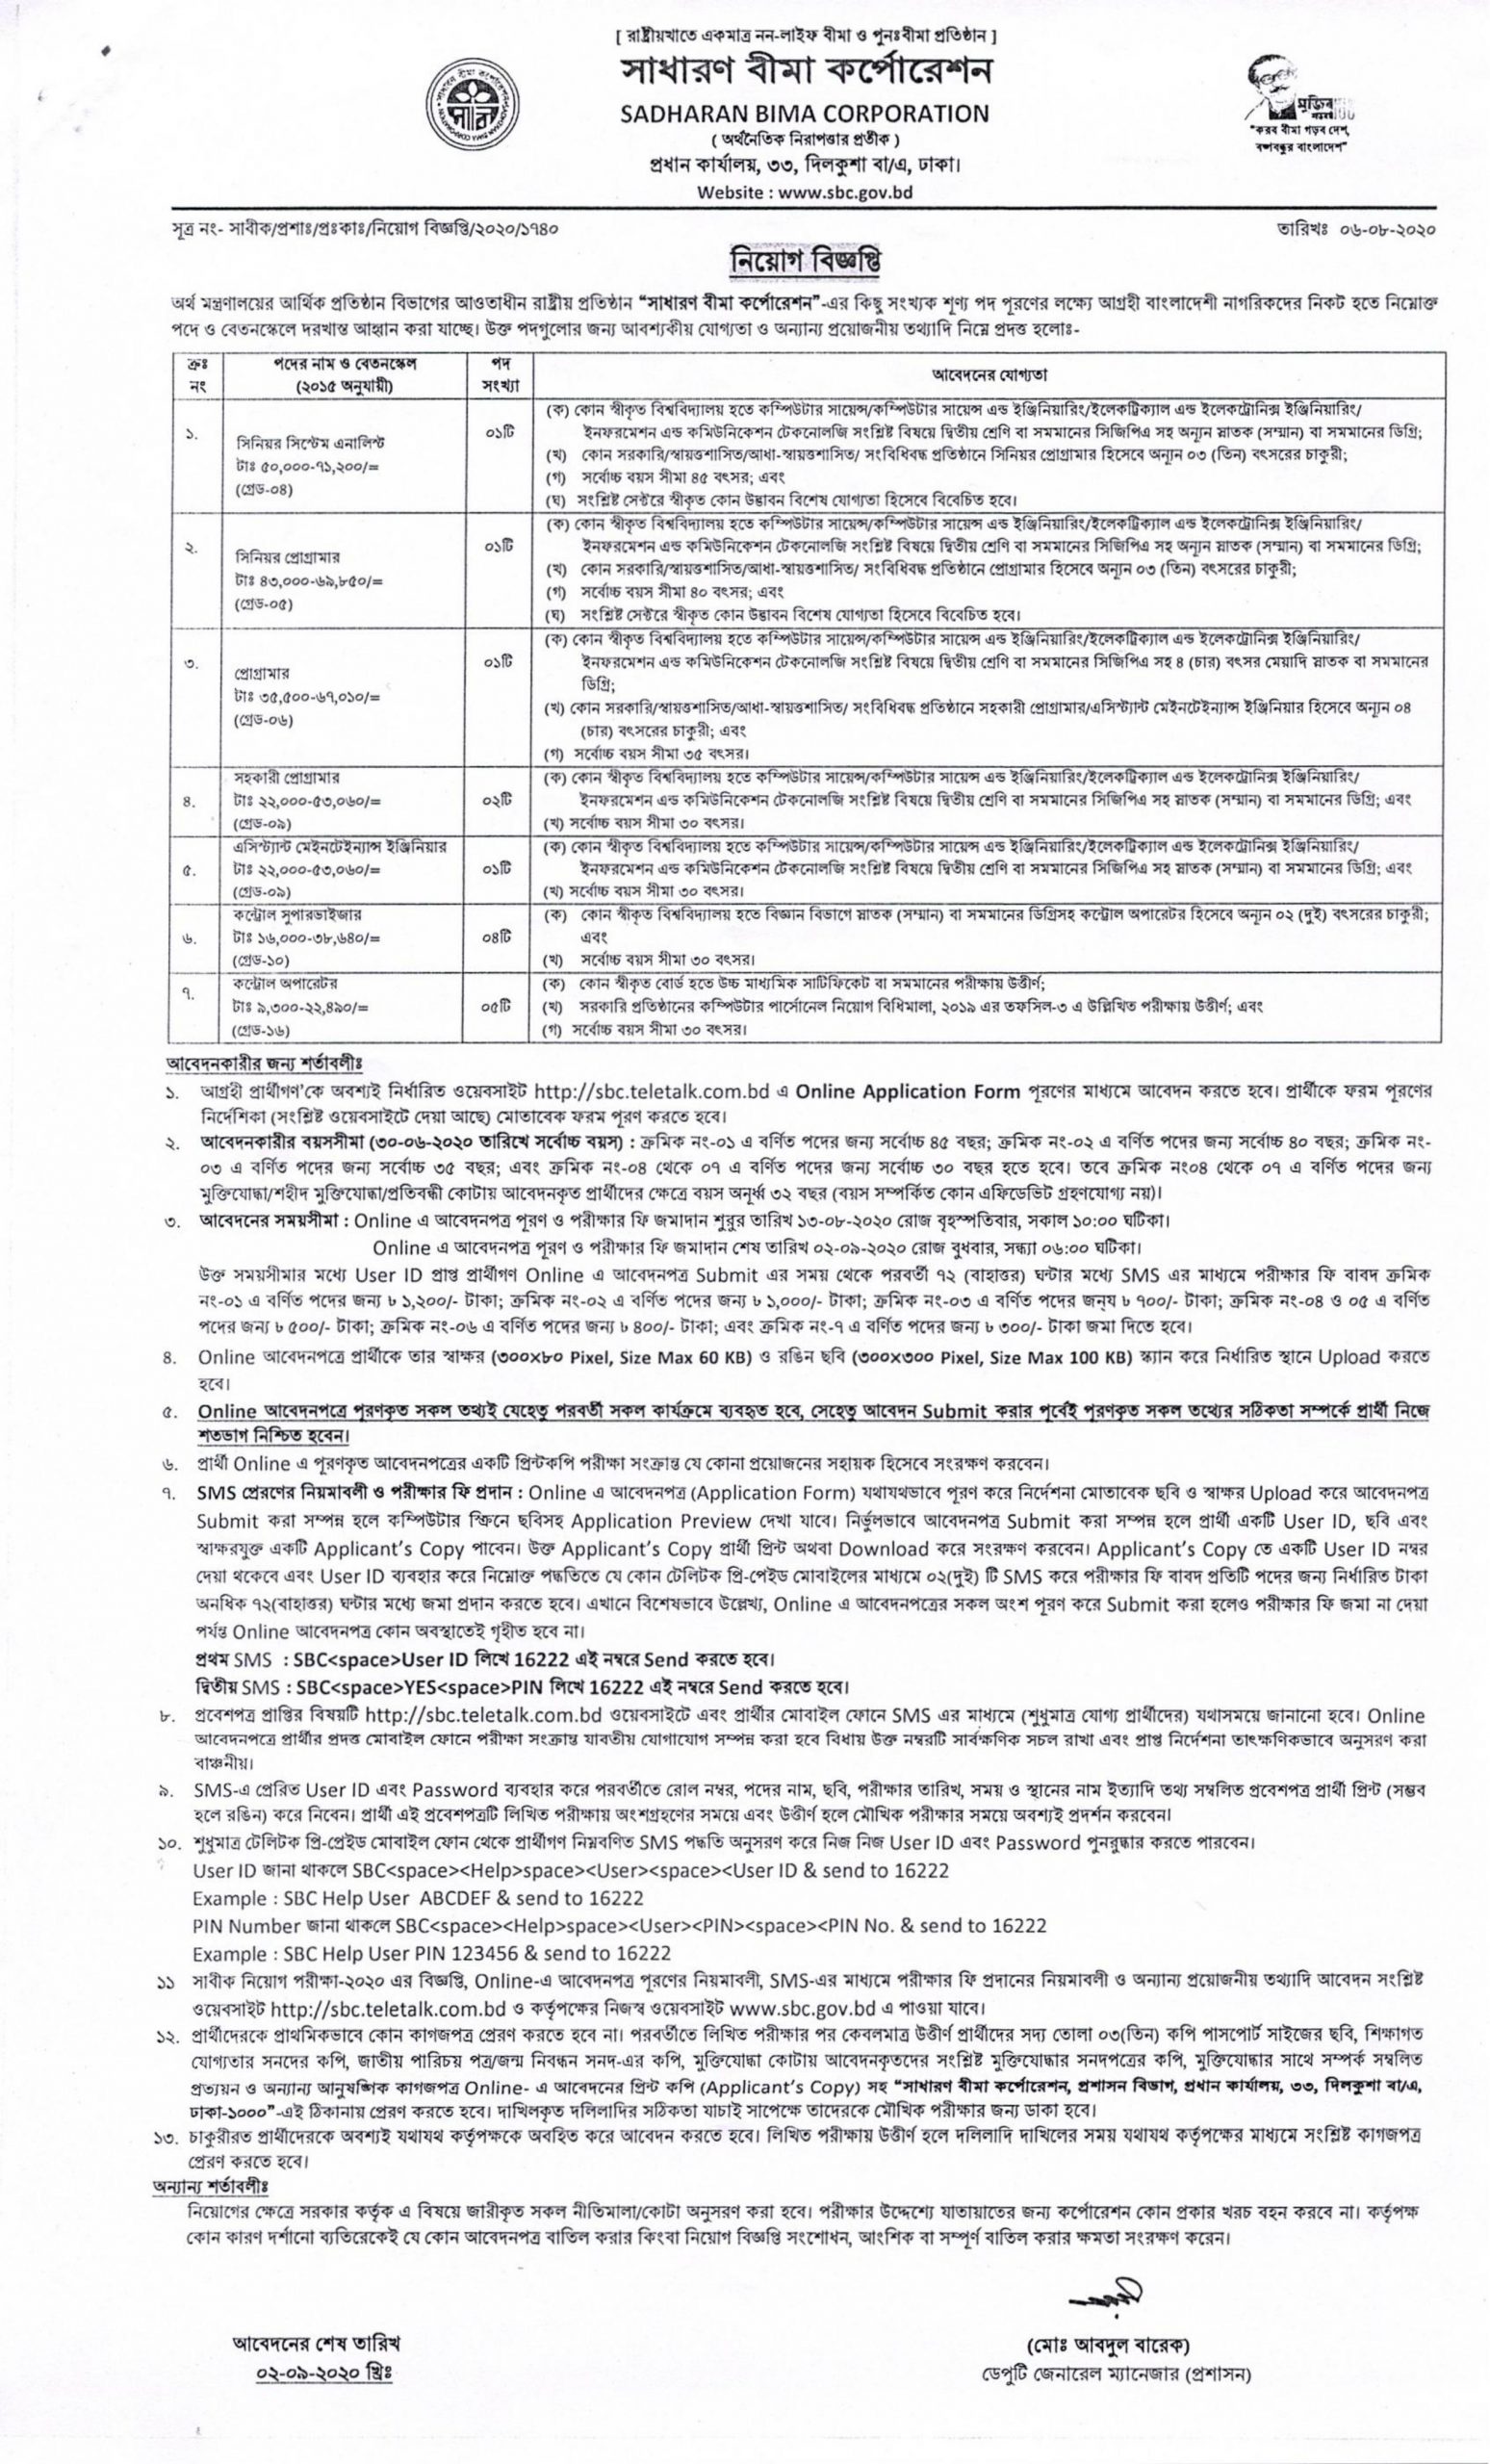 Sadharon Bima Corporation Job Circular 2020